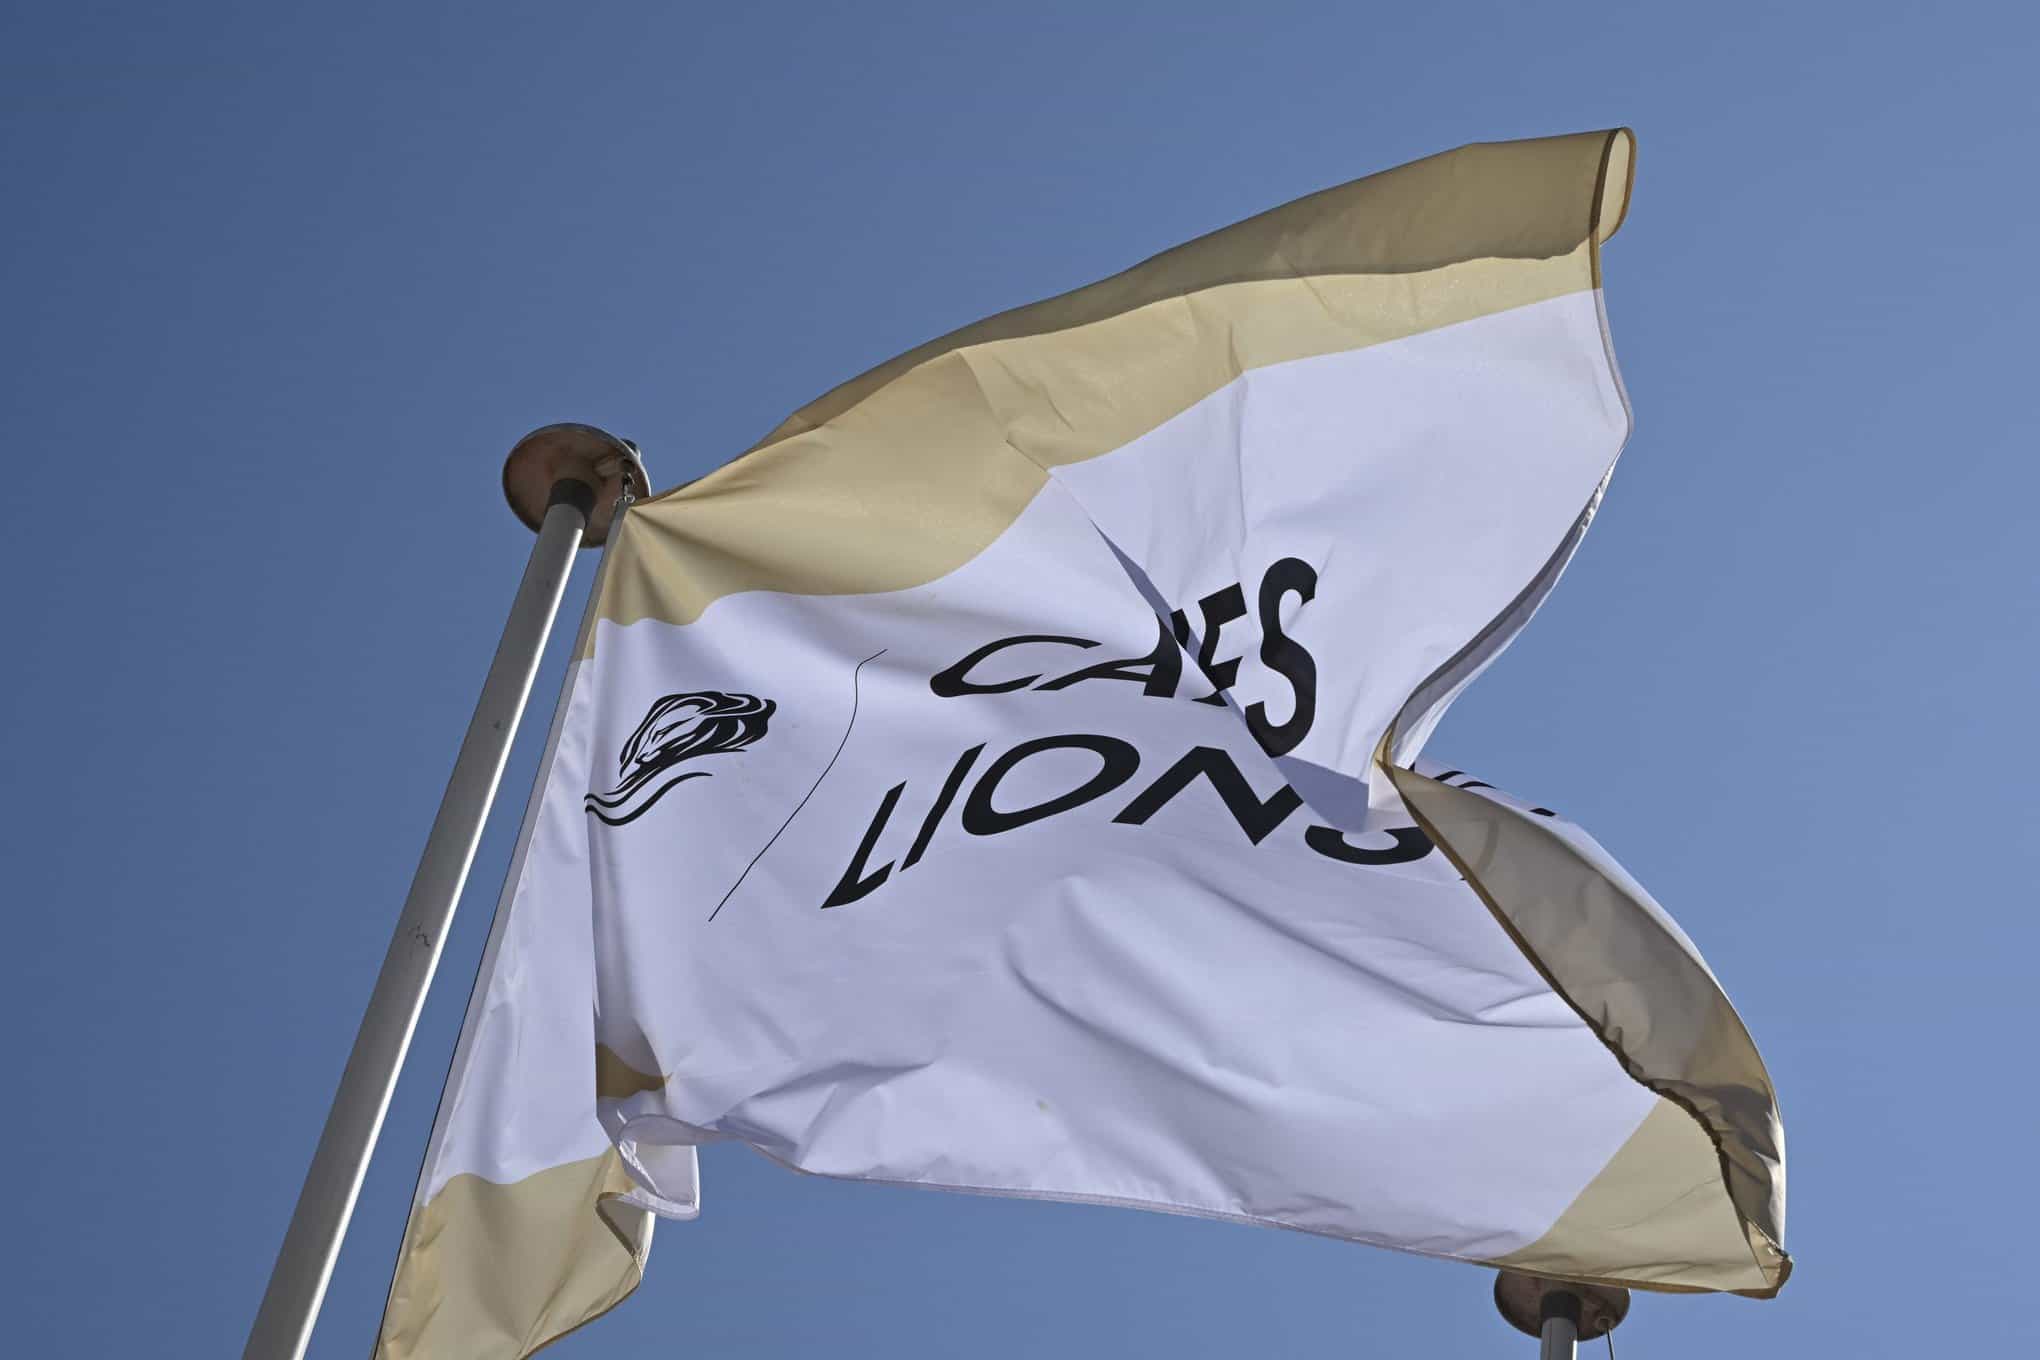 Cannes Lions flag